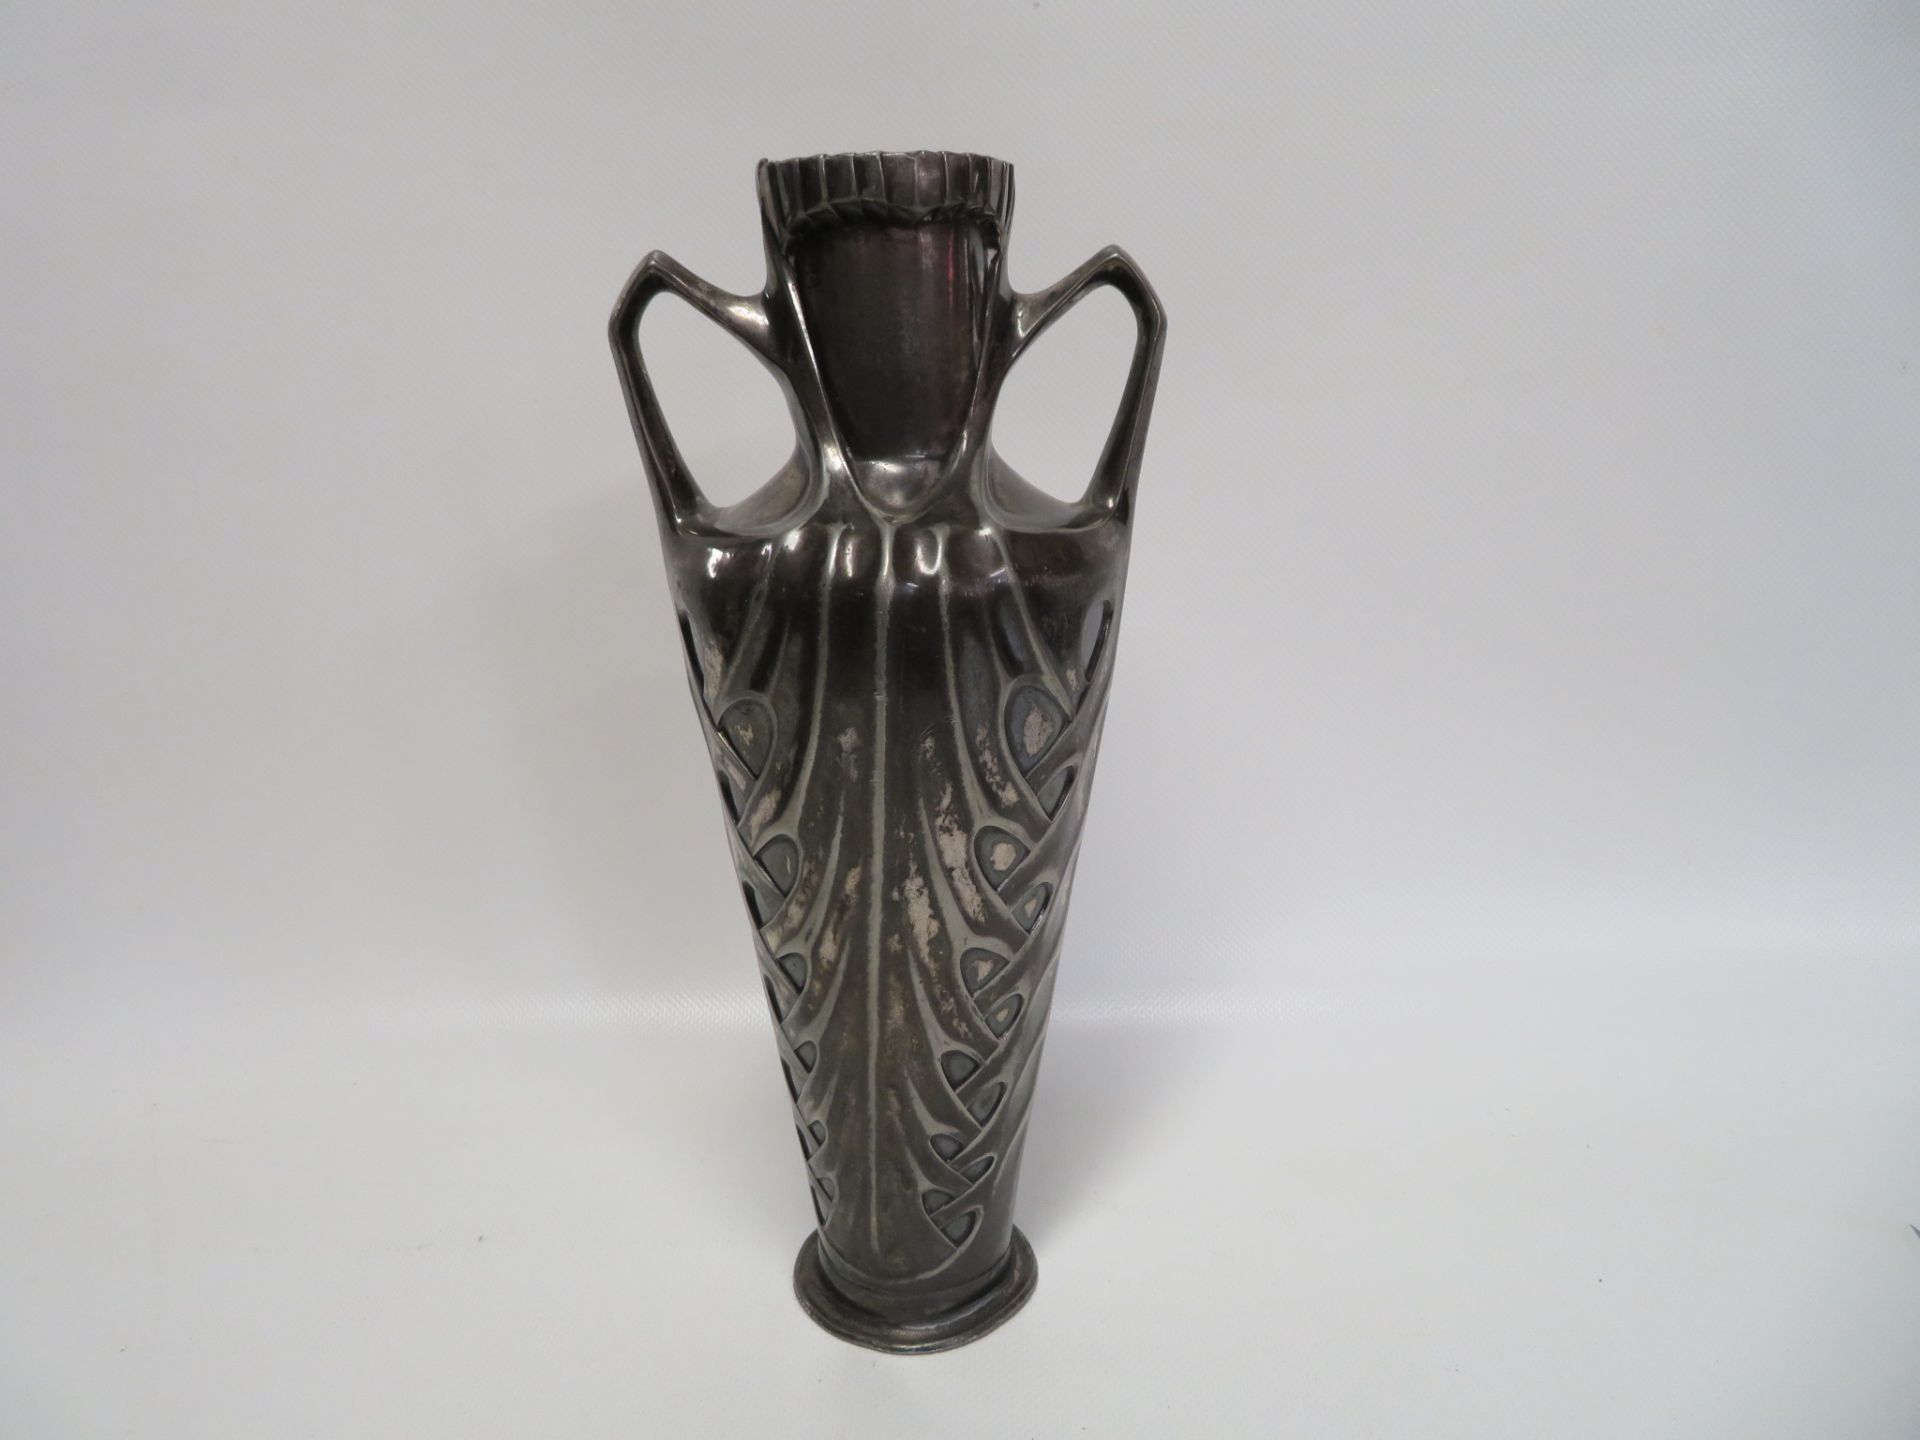 Jugendstil Vase mit Henkeln, um 1900, Zinn versilbert, Abrieb, h 26,5 cm, d 12 cm.